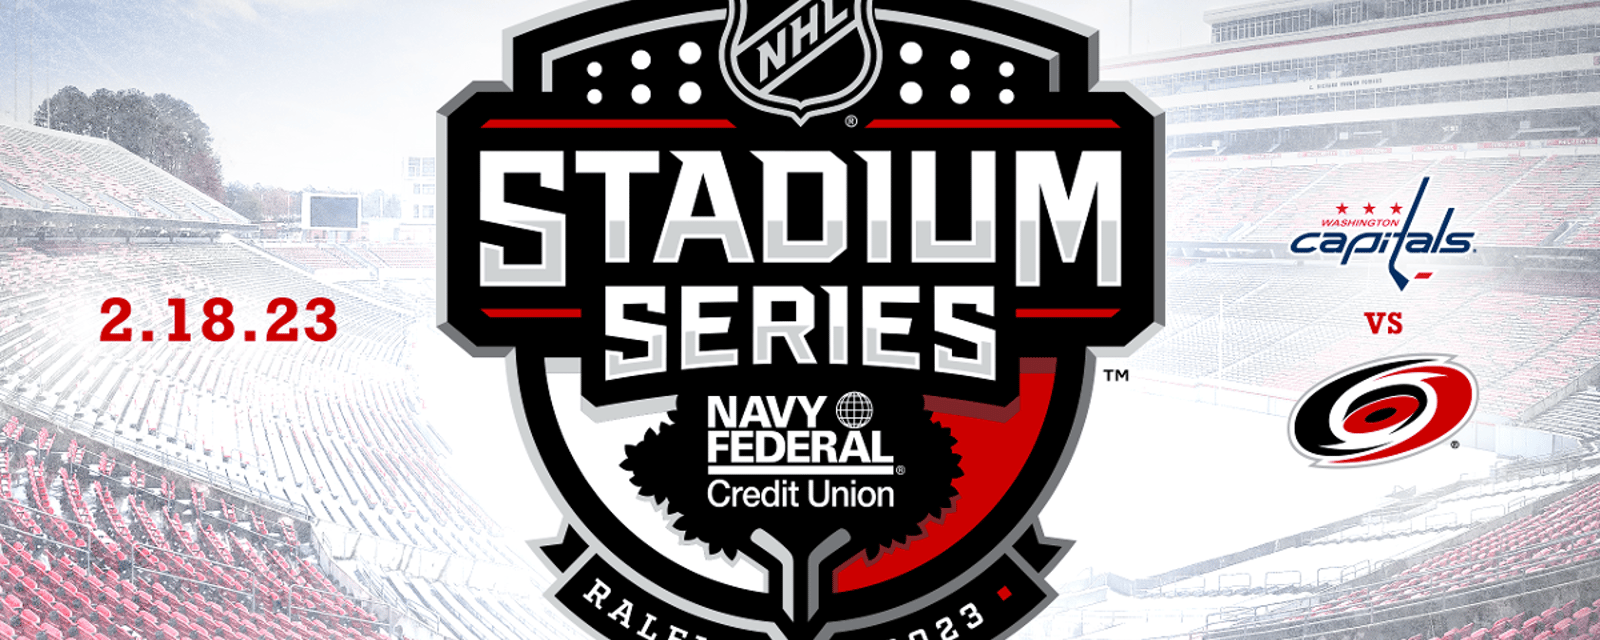 Stadium Series | Les Hurricanes et les Capitals dévoilent leurs logos pour l'évènement